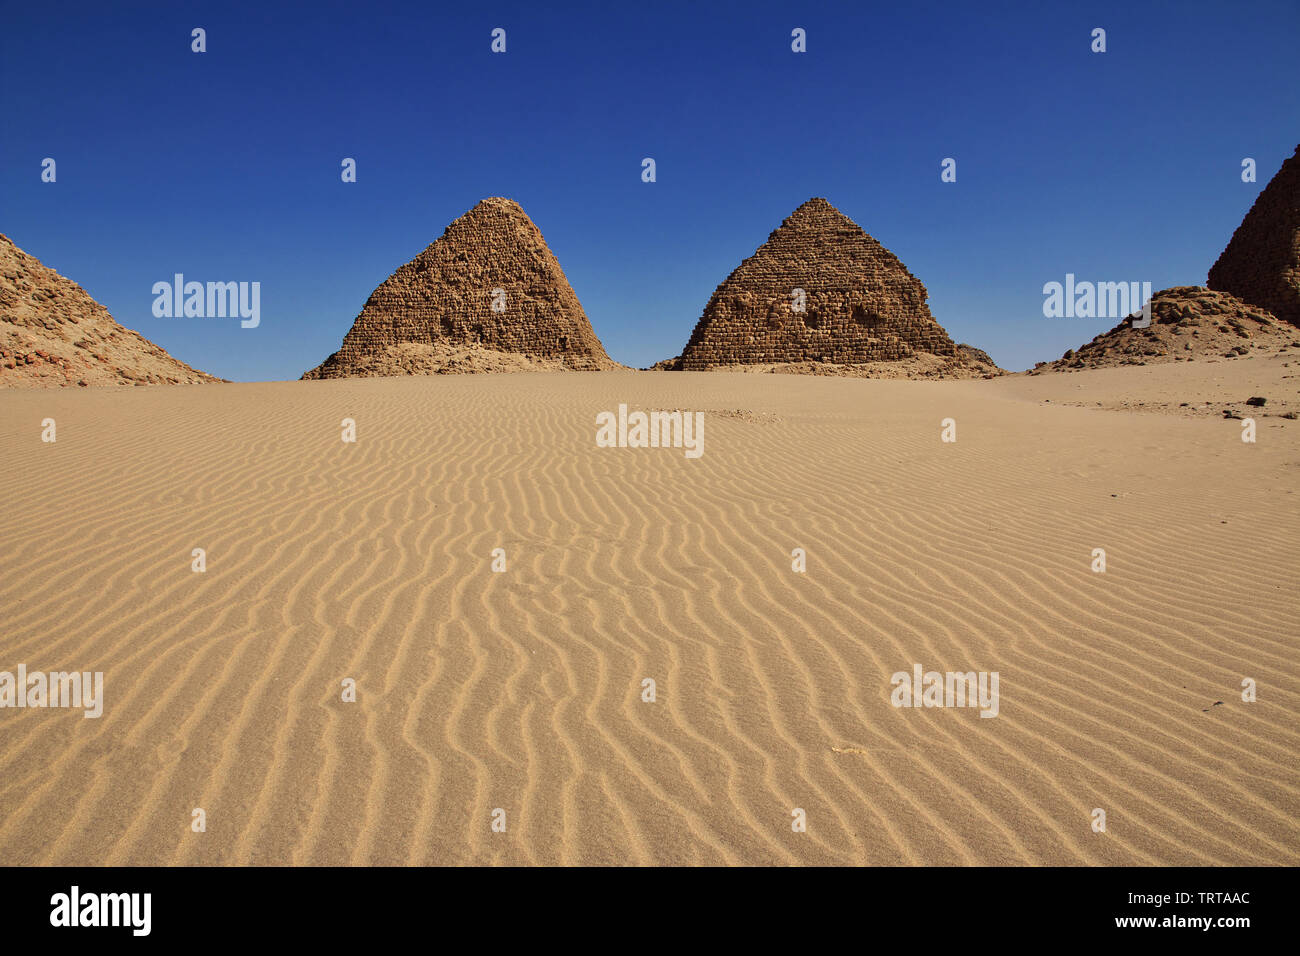 Ancient pyramids of Nuri, Sudan Stock Photo